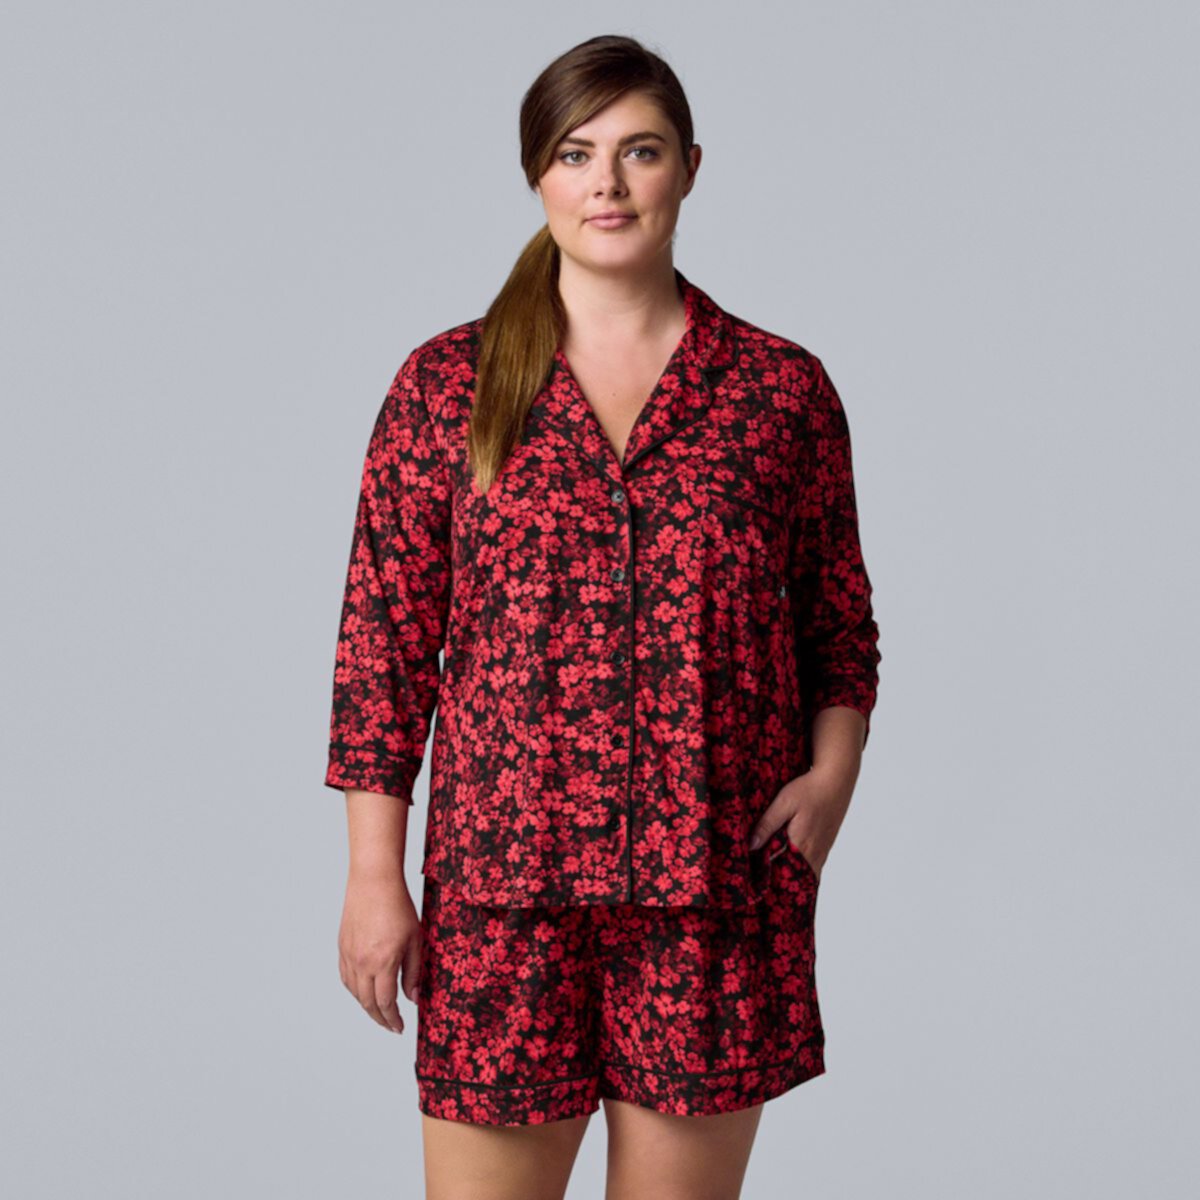 Plus Size Simply Vera Vera Wang 3/4 Sleeve Pajama Shirt & Pajama Boxer Shorts Sleep Set Simply Vera Vera Wang